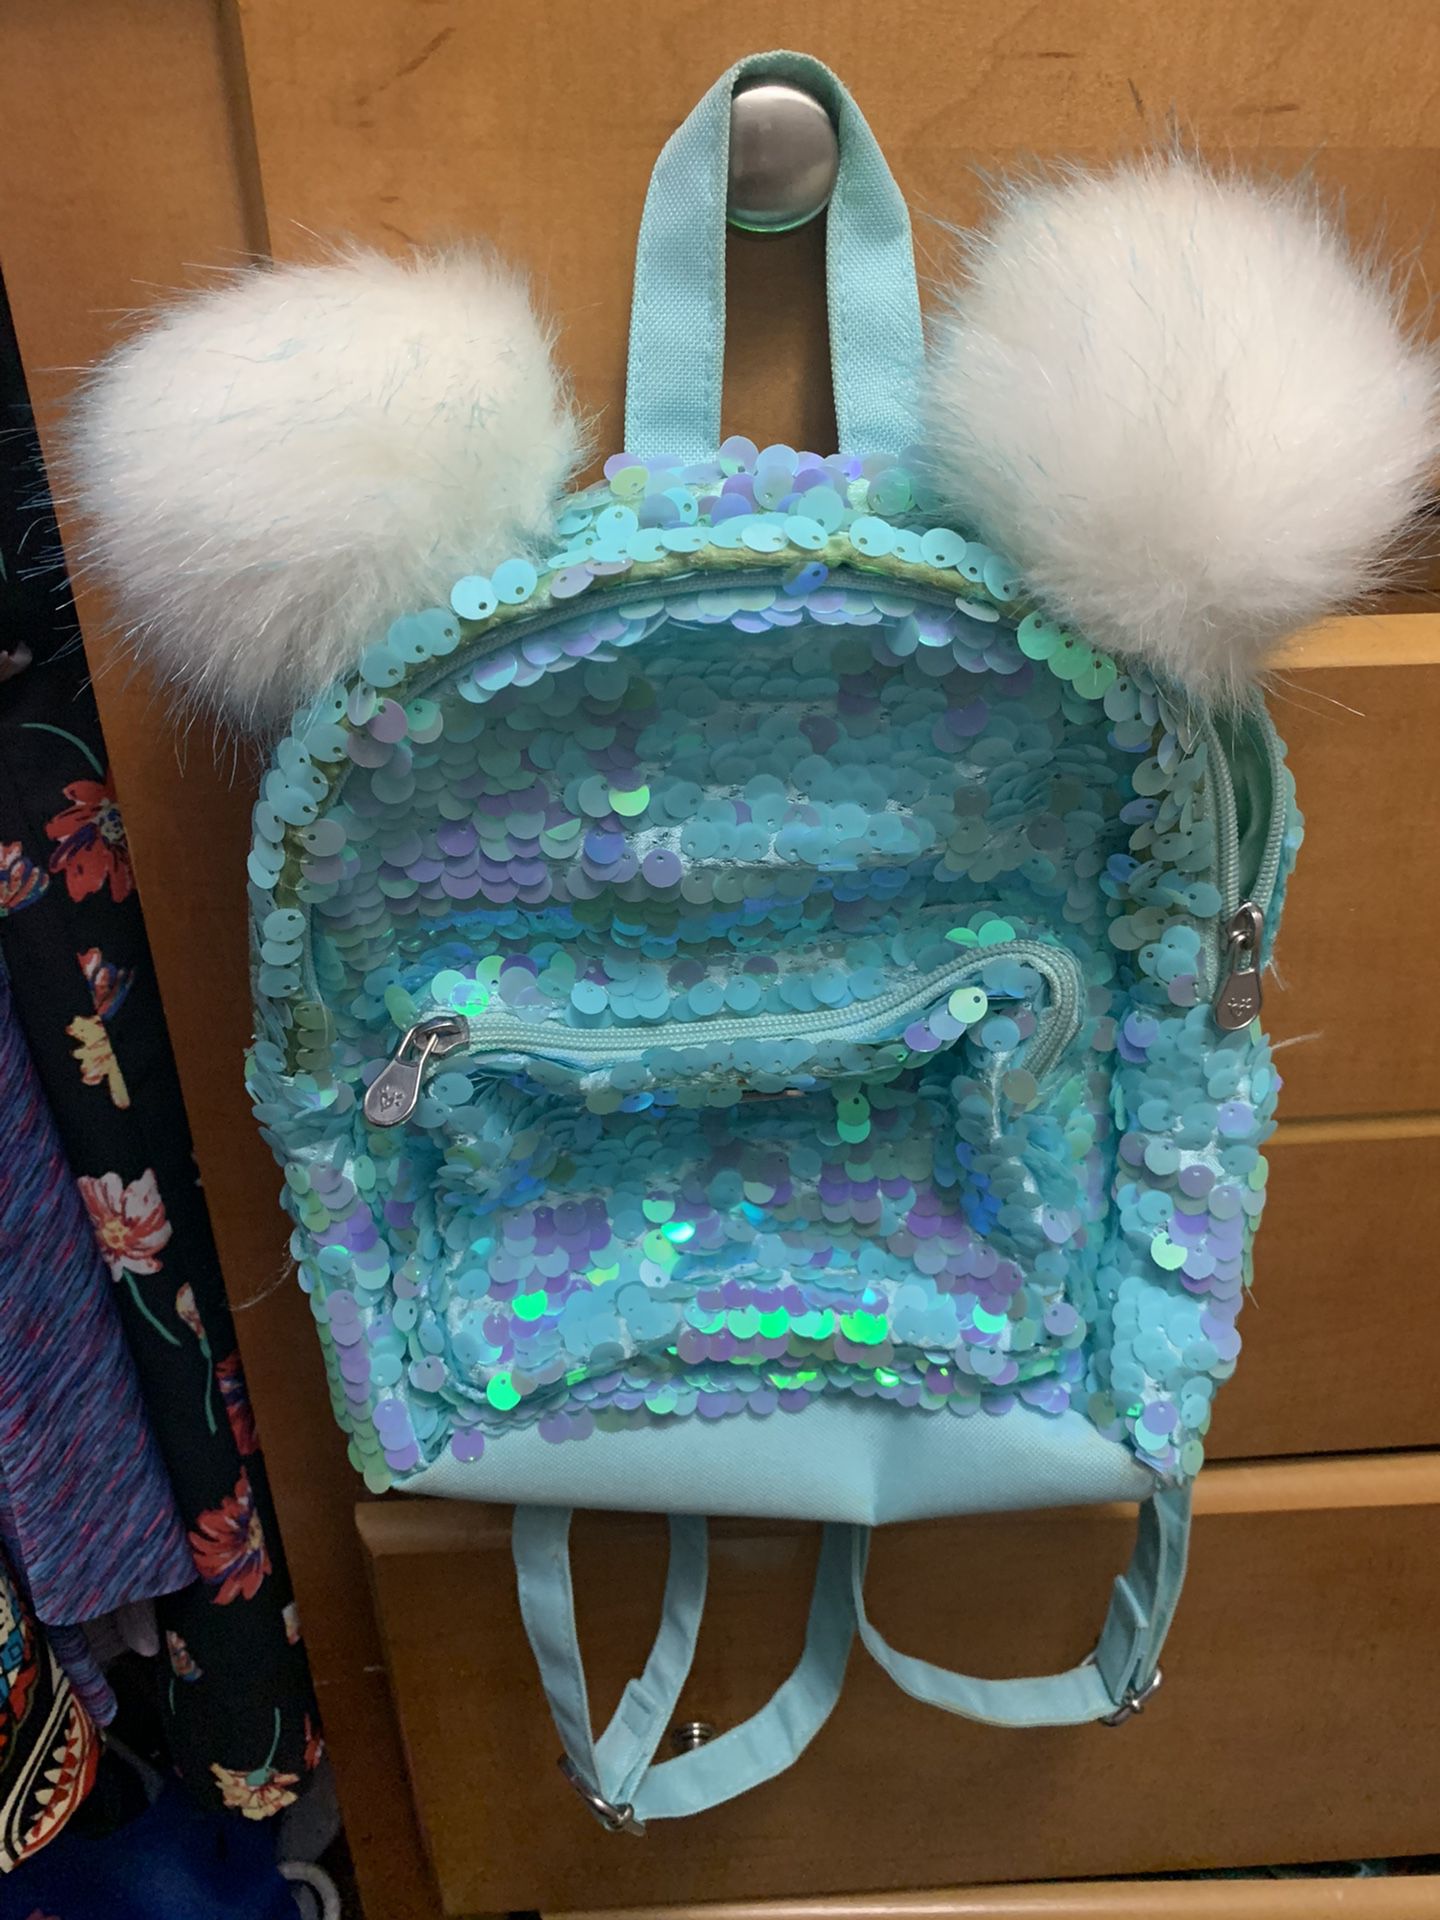 Justice Flip Sequin Pompom Mini Backpack